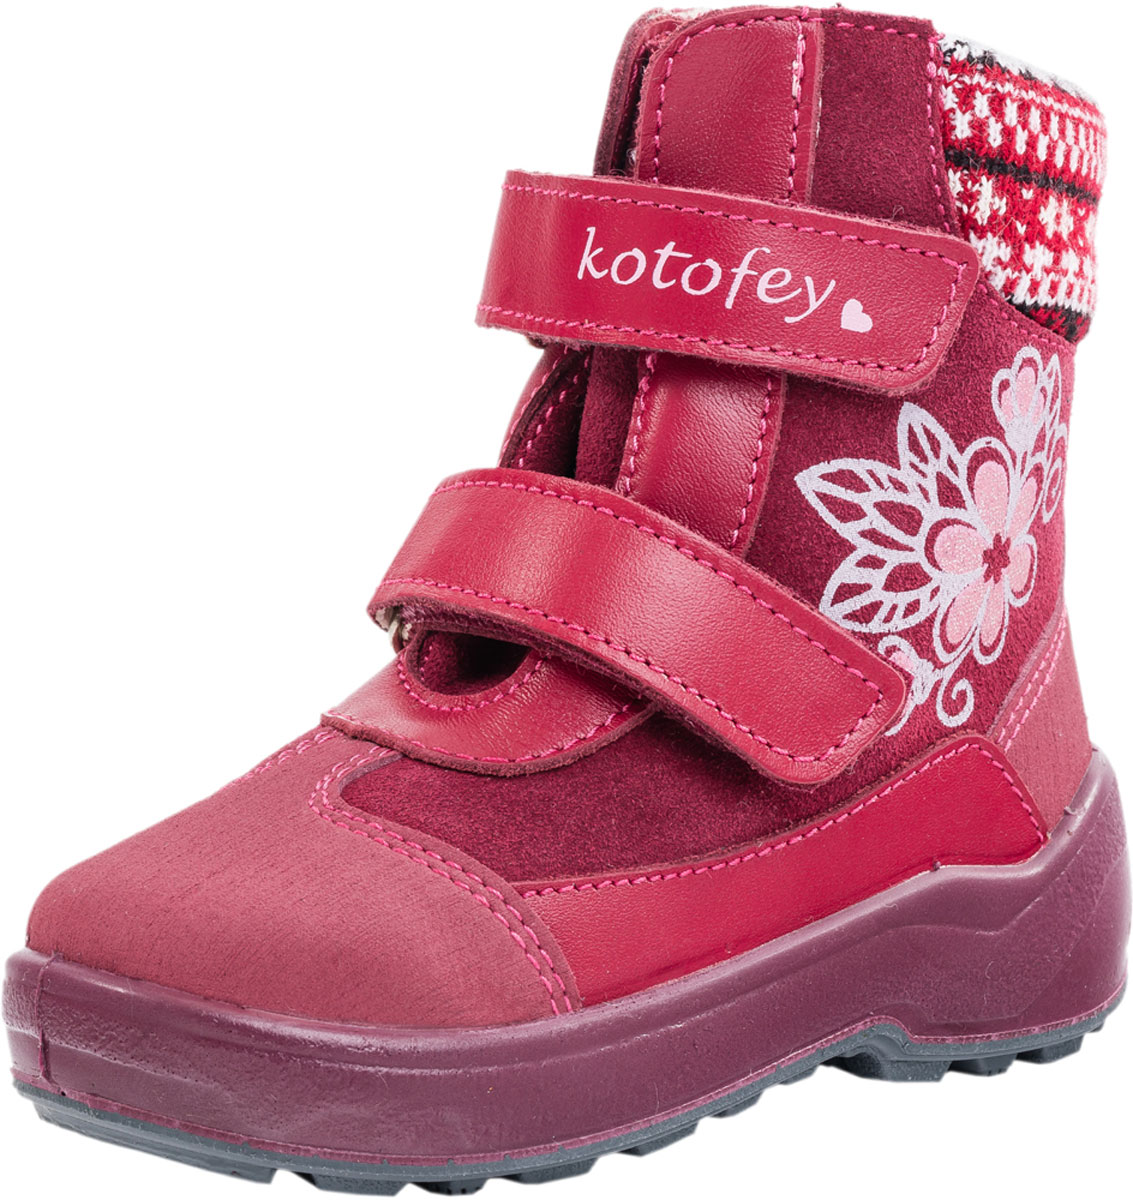 Ботинки для девочки Котофей, цвет: бордовый. 252114-41. Размер 23